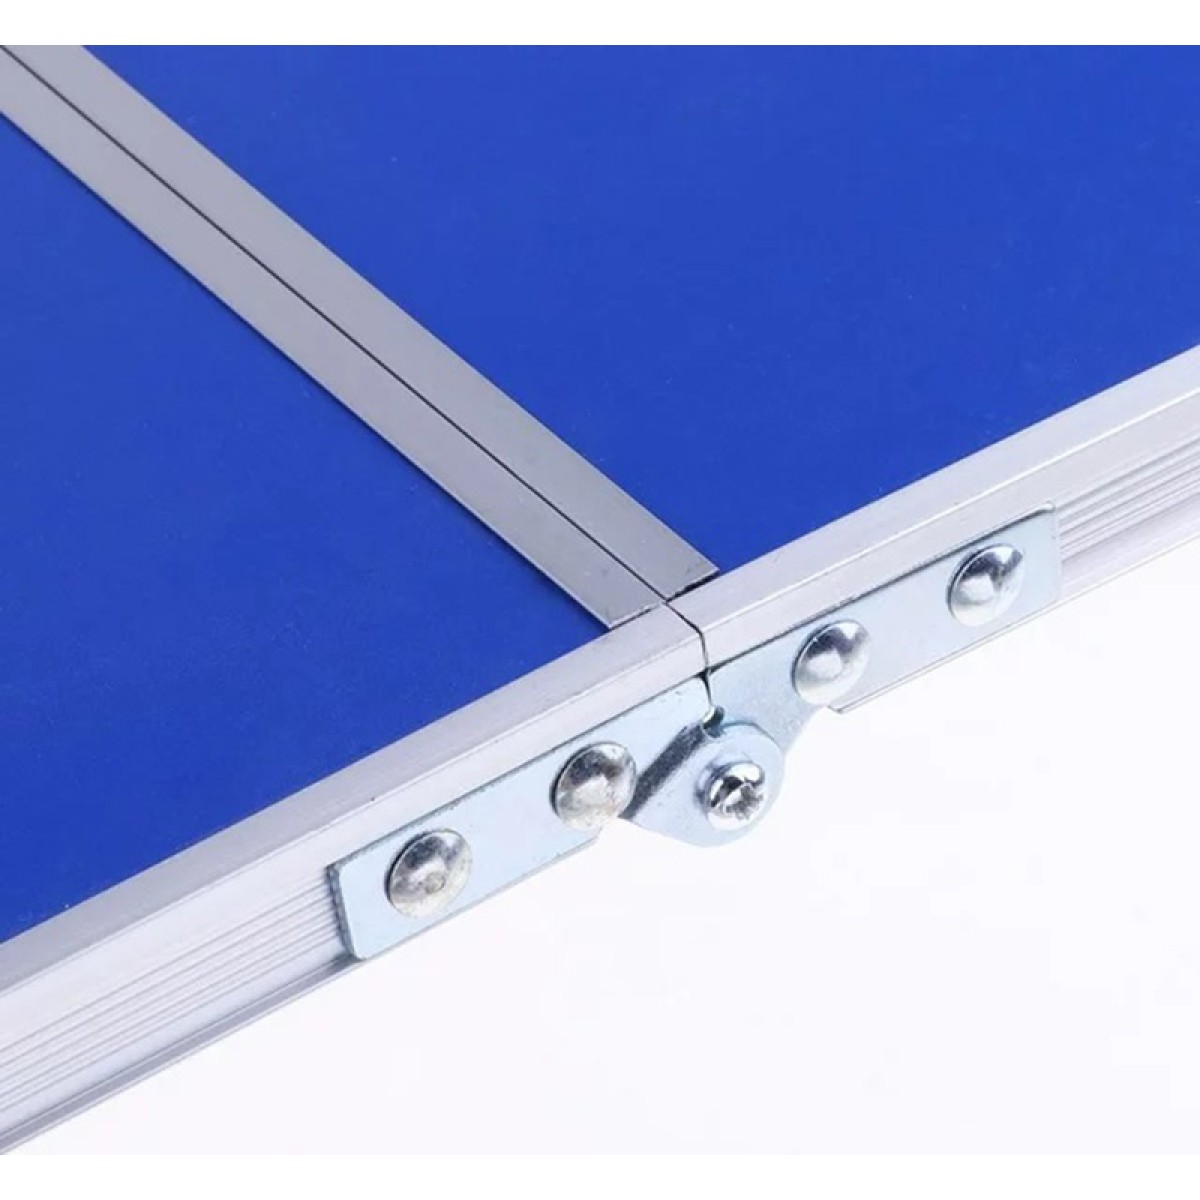 Τραπέζι Πτυσσόμενο 60x40x24,5cm αλουμίνιο με επίστρωση mdf σε μπλε χρώμα Sidirela E-3494